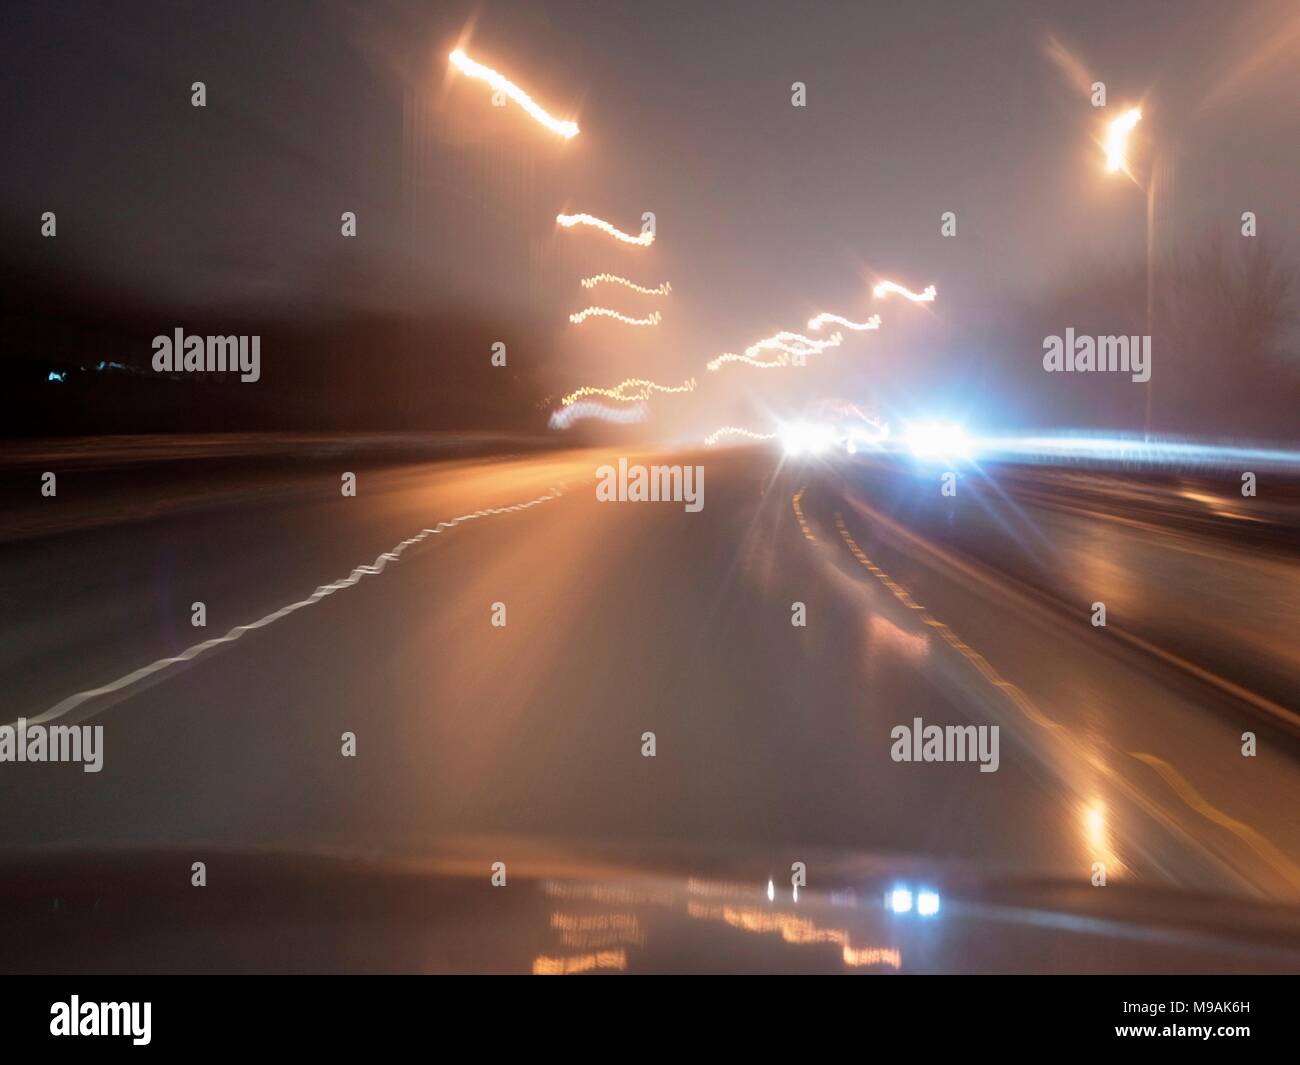 AJAXNETPHOTO. 2018. Autostrada M23, Inghilterra. - Abbagliamento dei fari - luci accecanti di su-proveniente traffico autostradale su una notte piovosa. foto:JONATHAN EASTLAND/AJAX REF:GXR180303 6946 Foto Stock